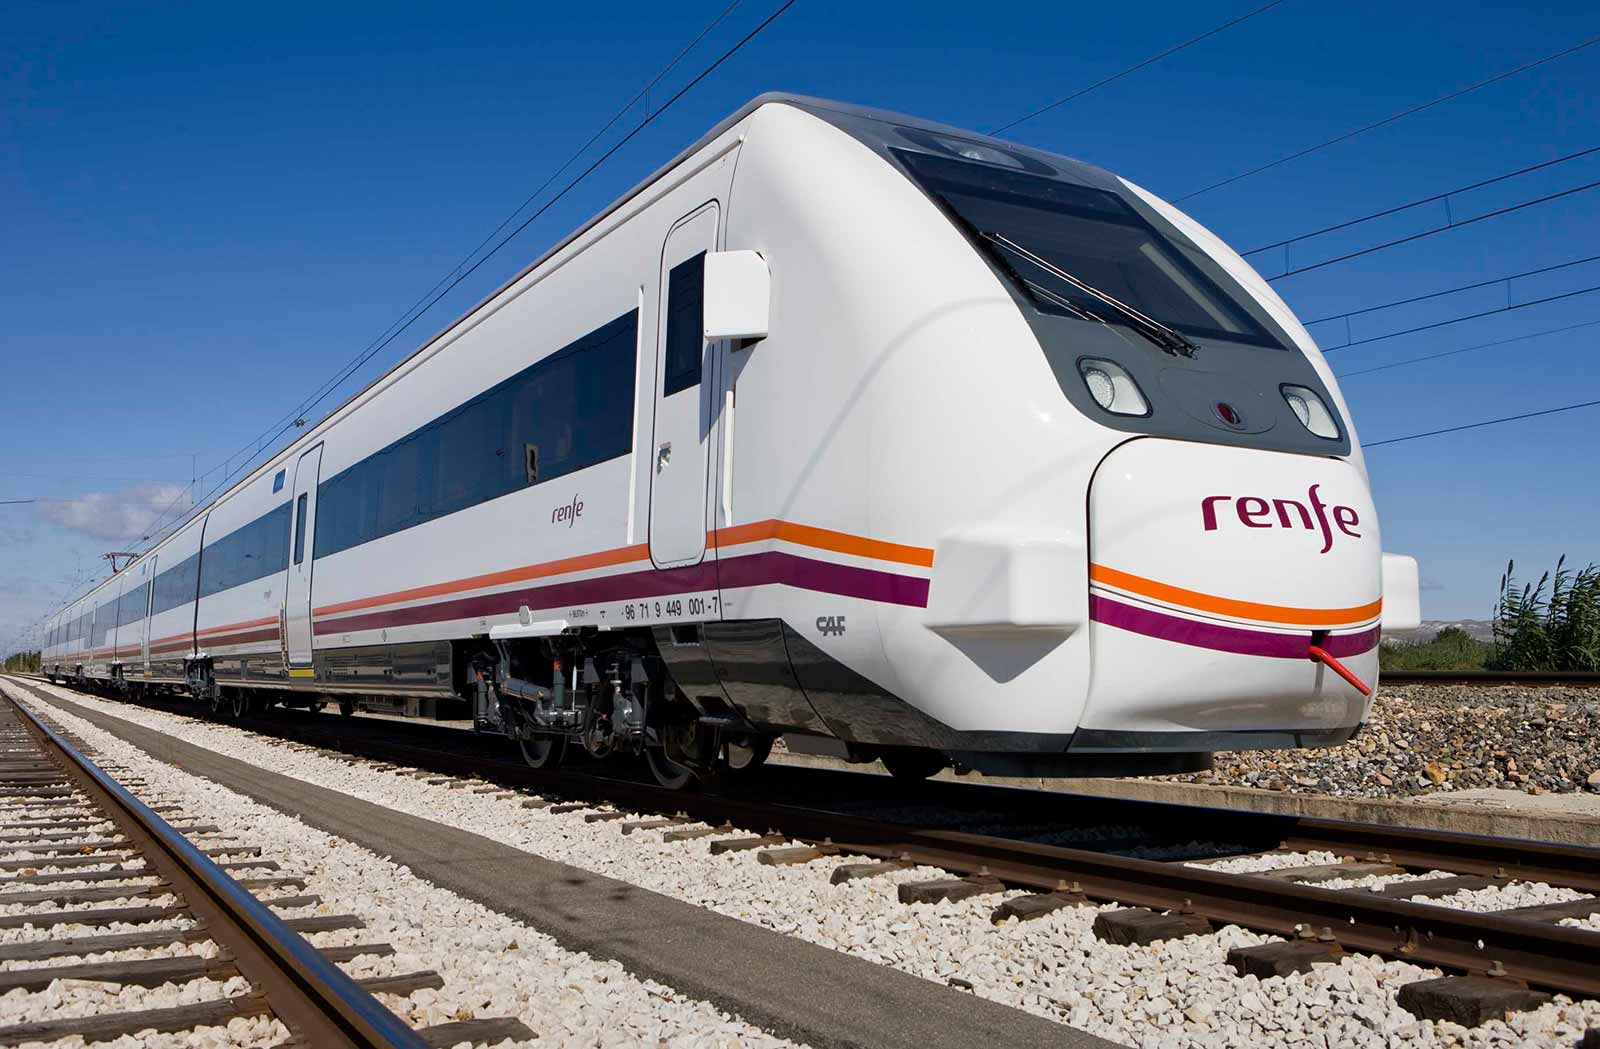 RENFE Железная дорога Испании